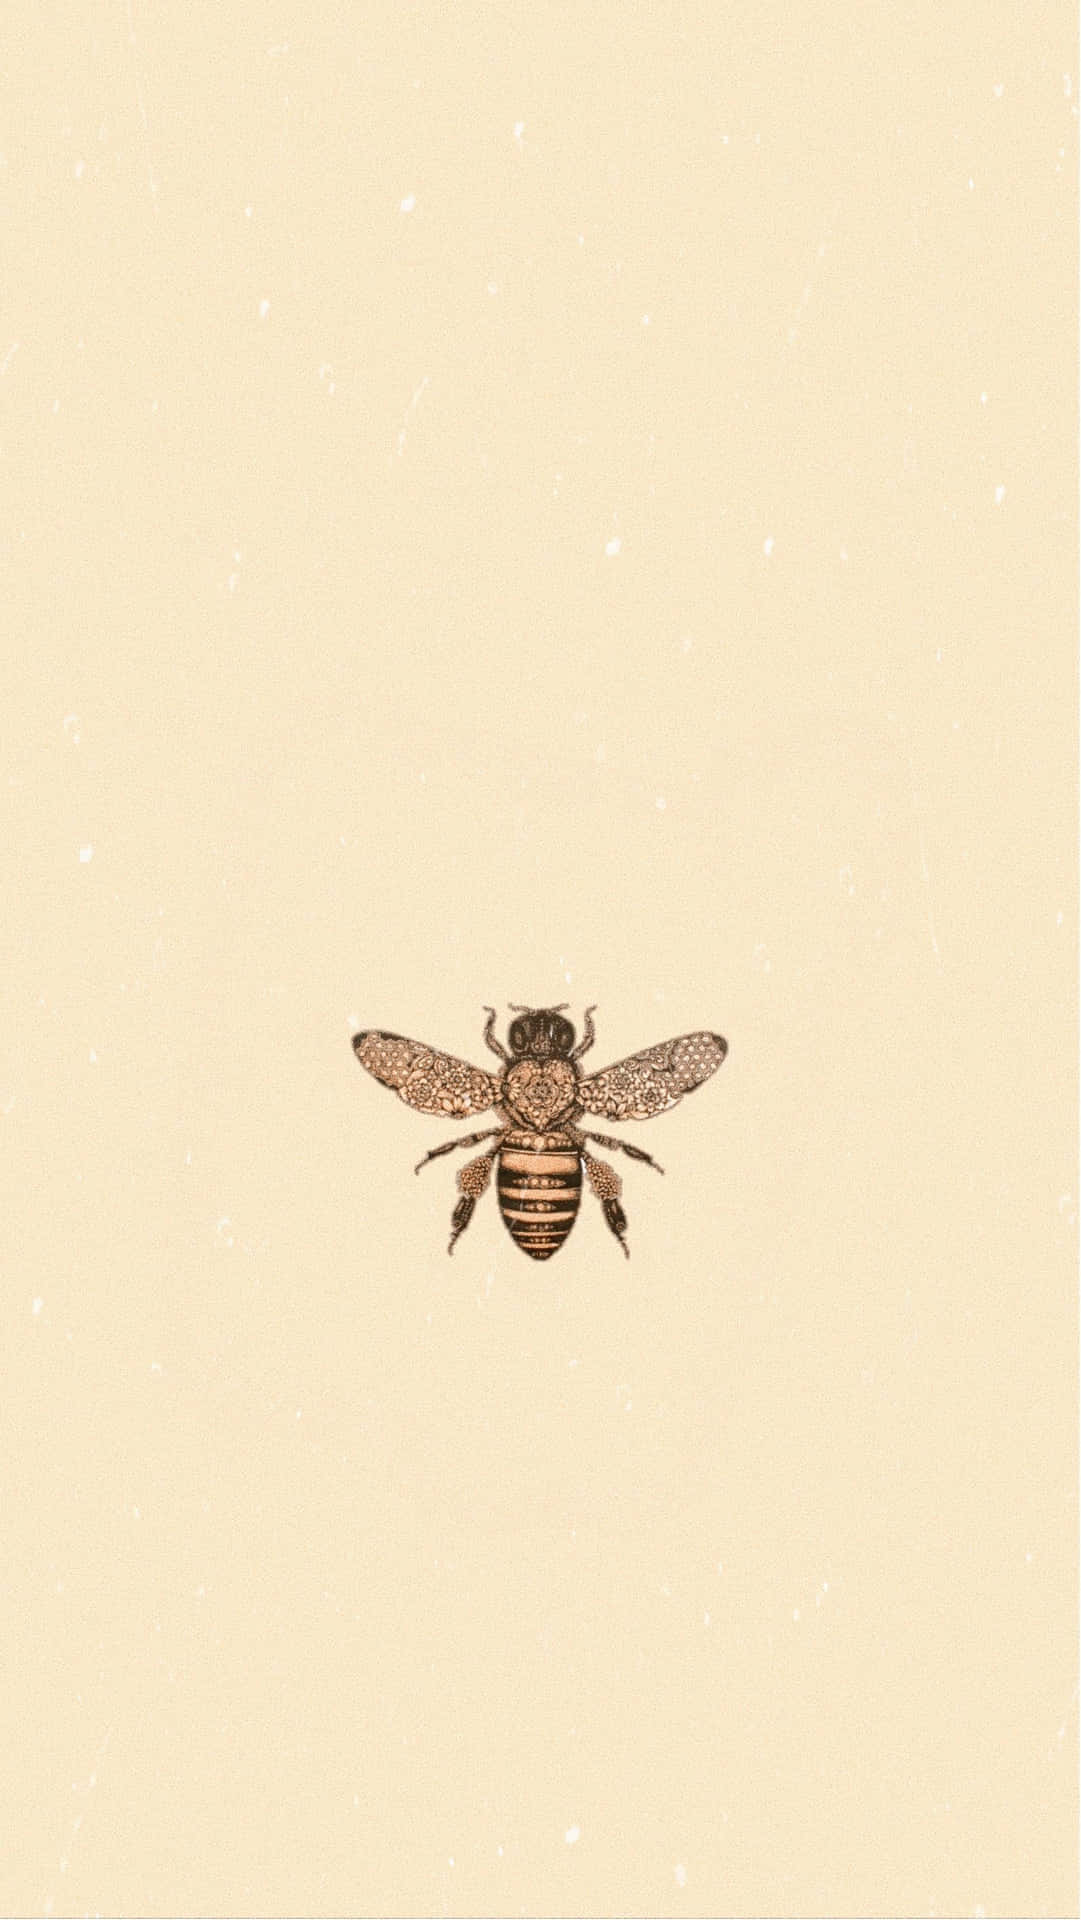 Aesthetic Bee 1593 X 2830 Wallpaper Wallpaper